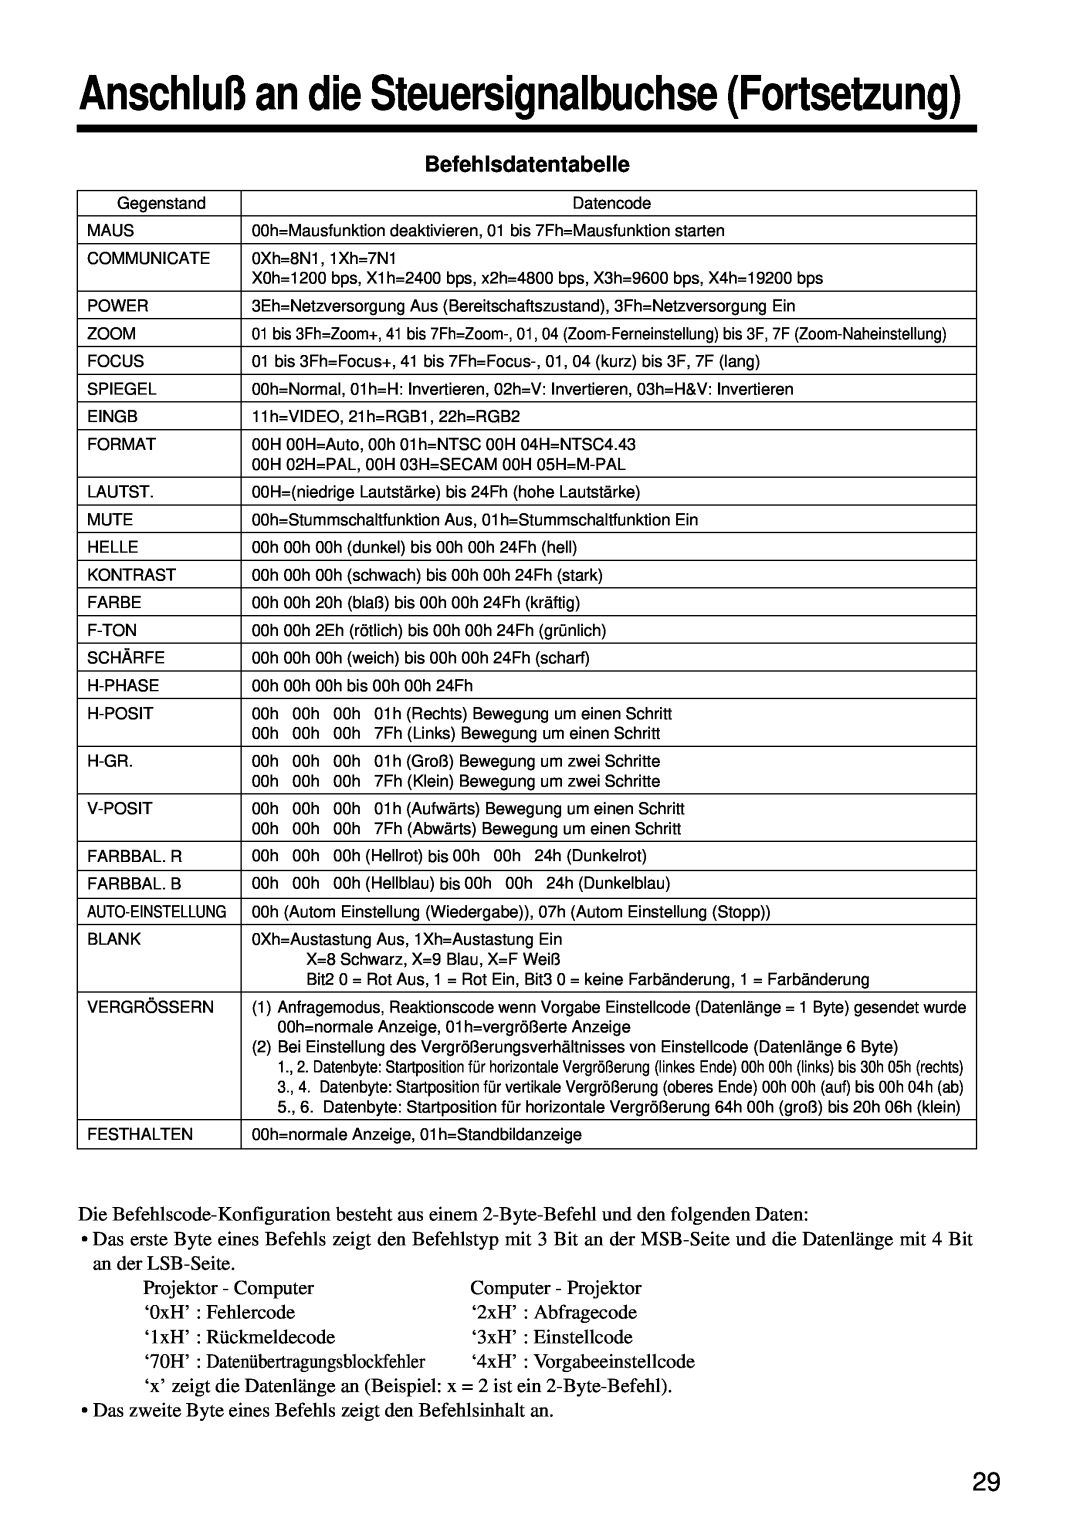 Hitachi CP-S860W user manual Befehlsdatentabelle, Anschluß an die Steuersignalbuchse Fortsetzung 